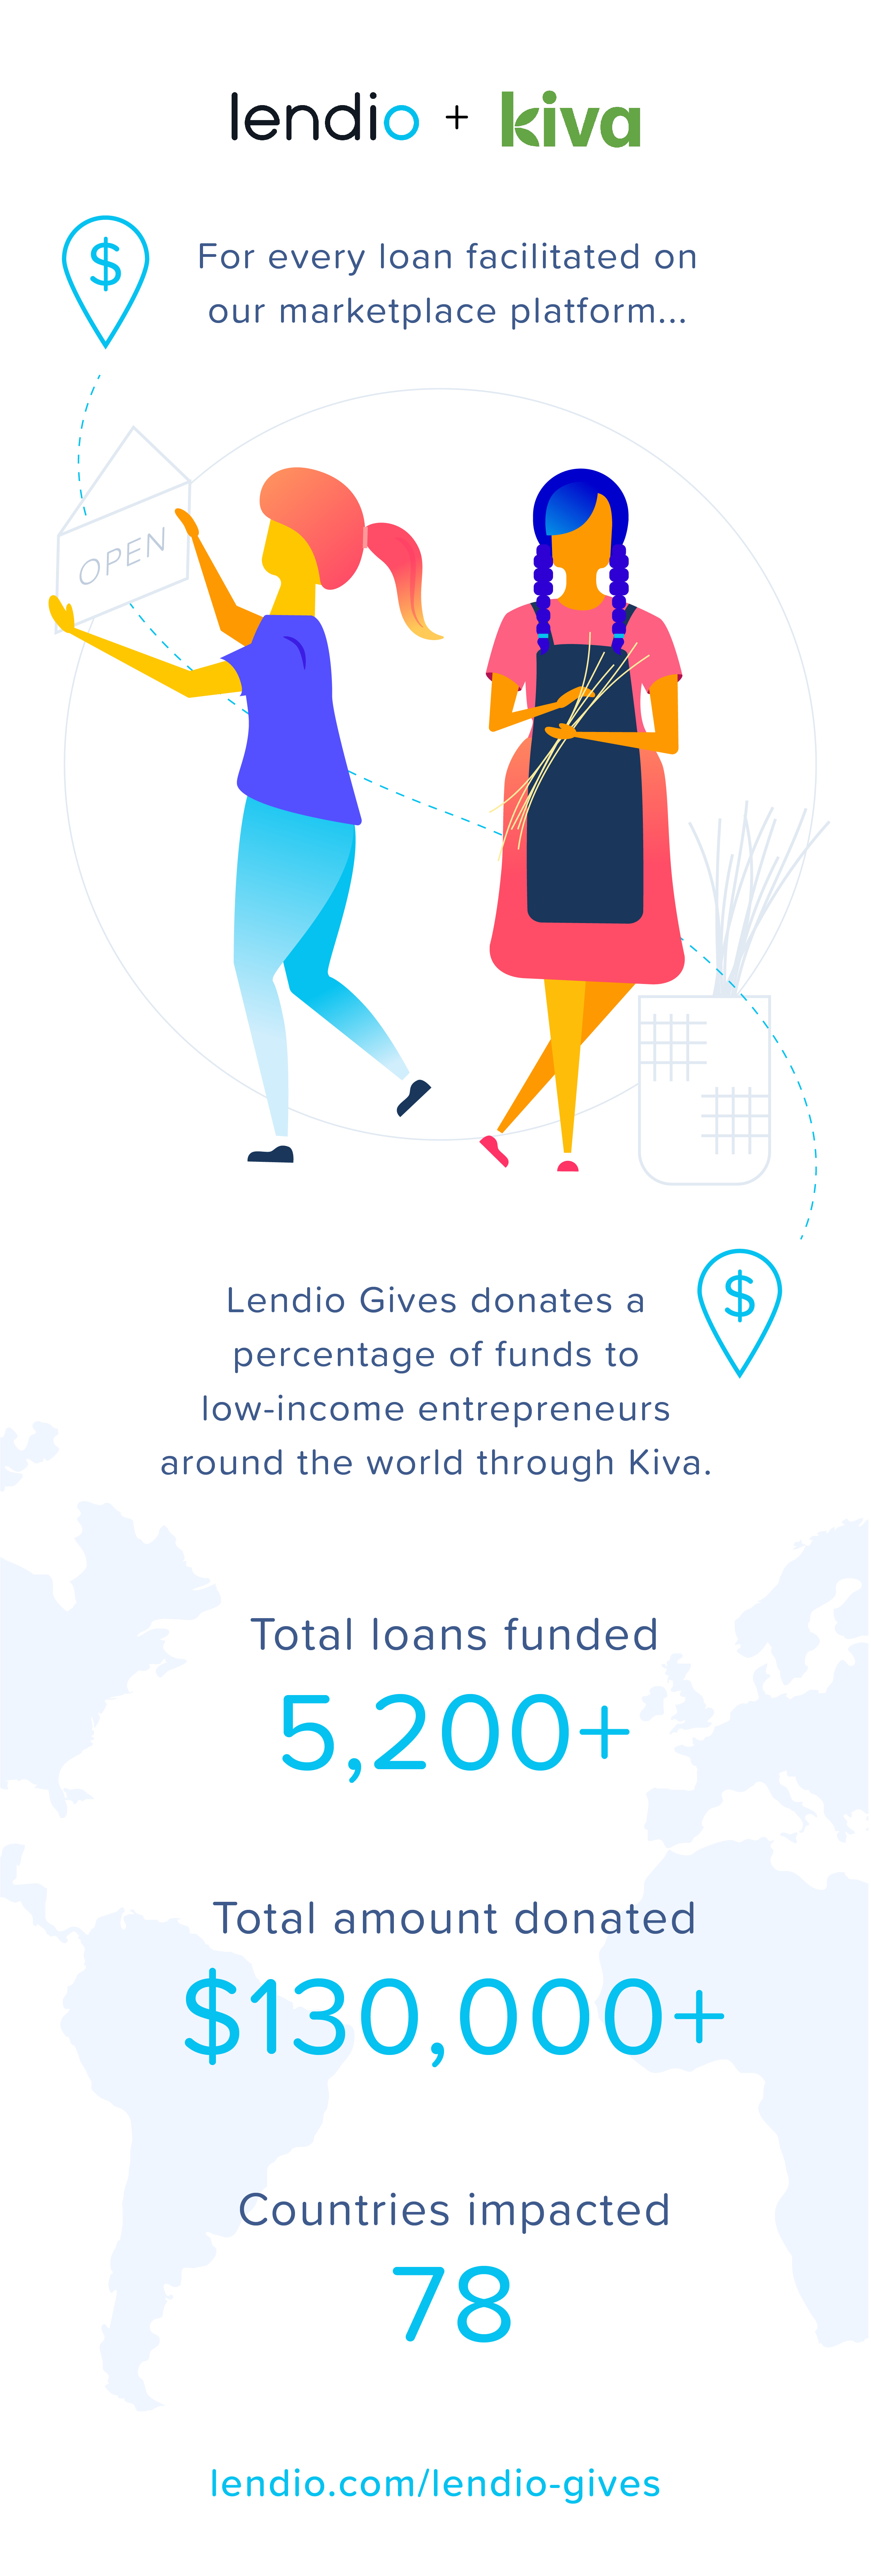 Lendio Gives to Low-Income Entrepreneurs Through Kiva